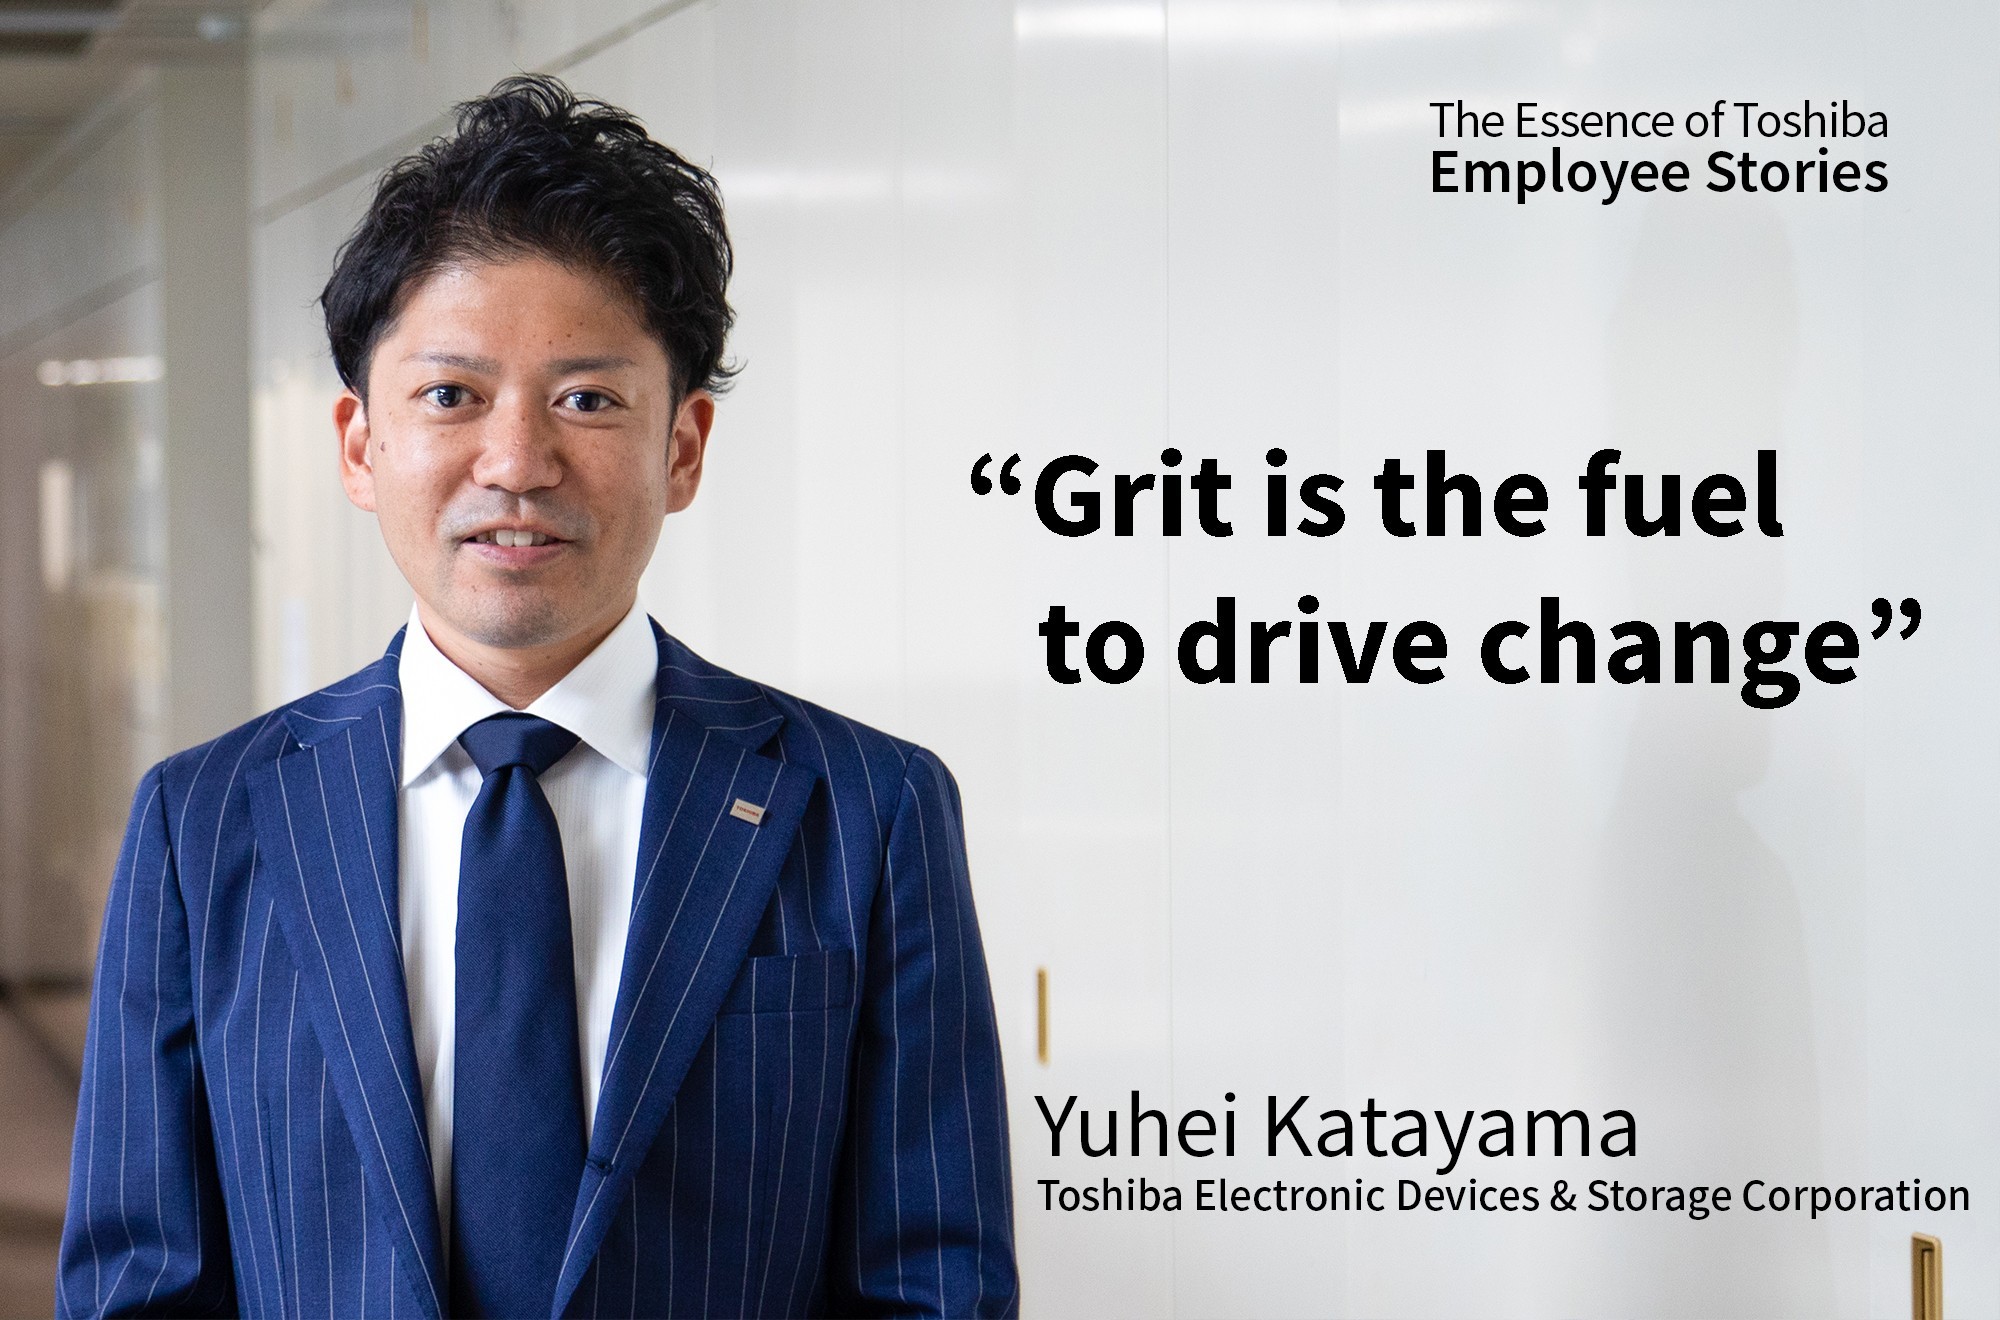 Toshiba Electronic Devices & Storage Corporation: Yuhei Katayama